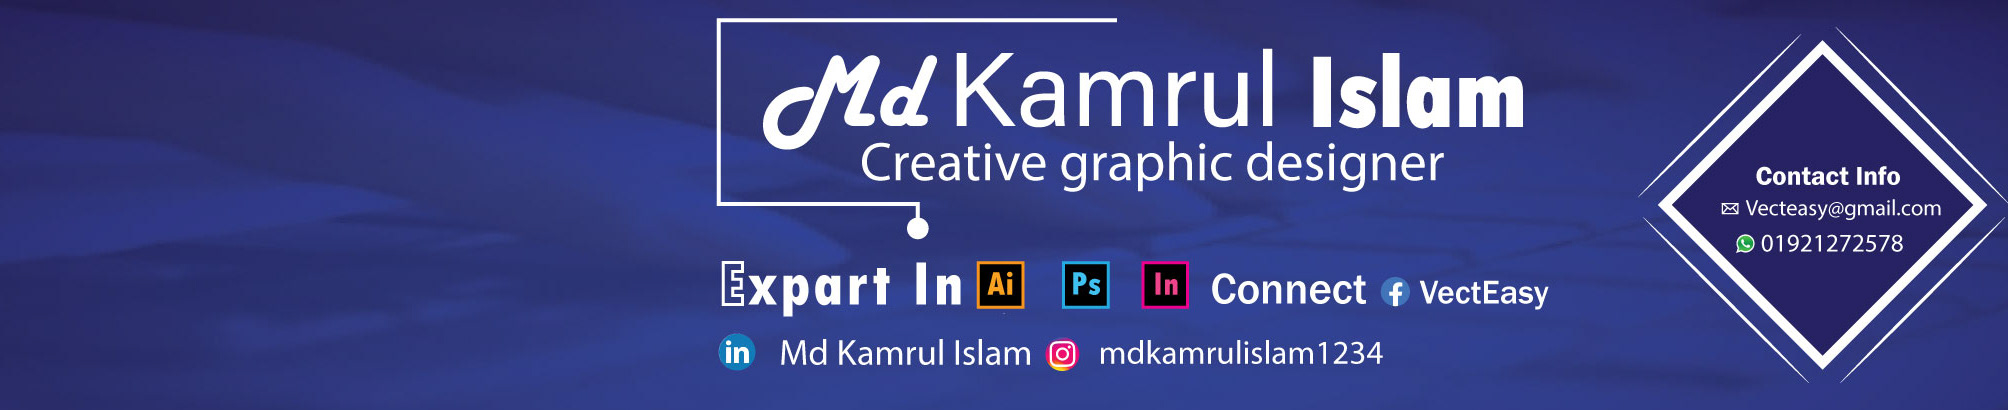 Banner de perfil de MD KAMRUL ISLAM